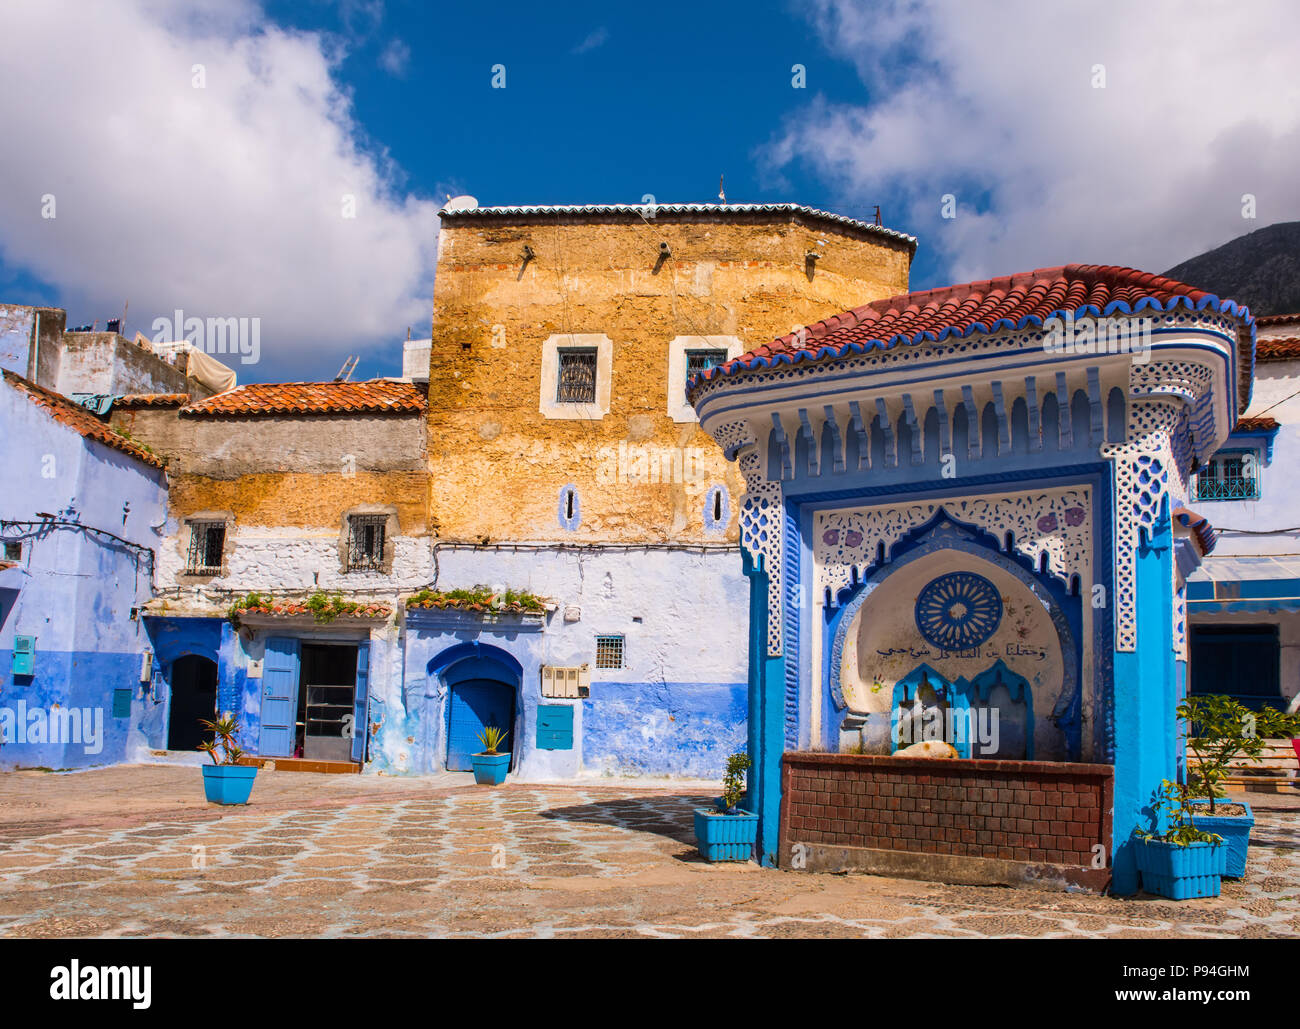 Fontaine publique de la Plaza El Hauta, carrés dans médina de Chefchaouen Maroc Banque D'Images